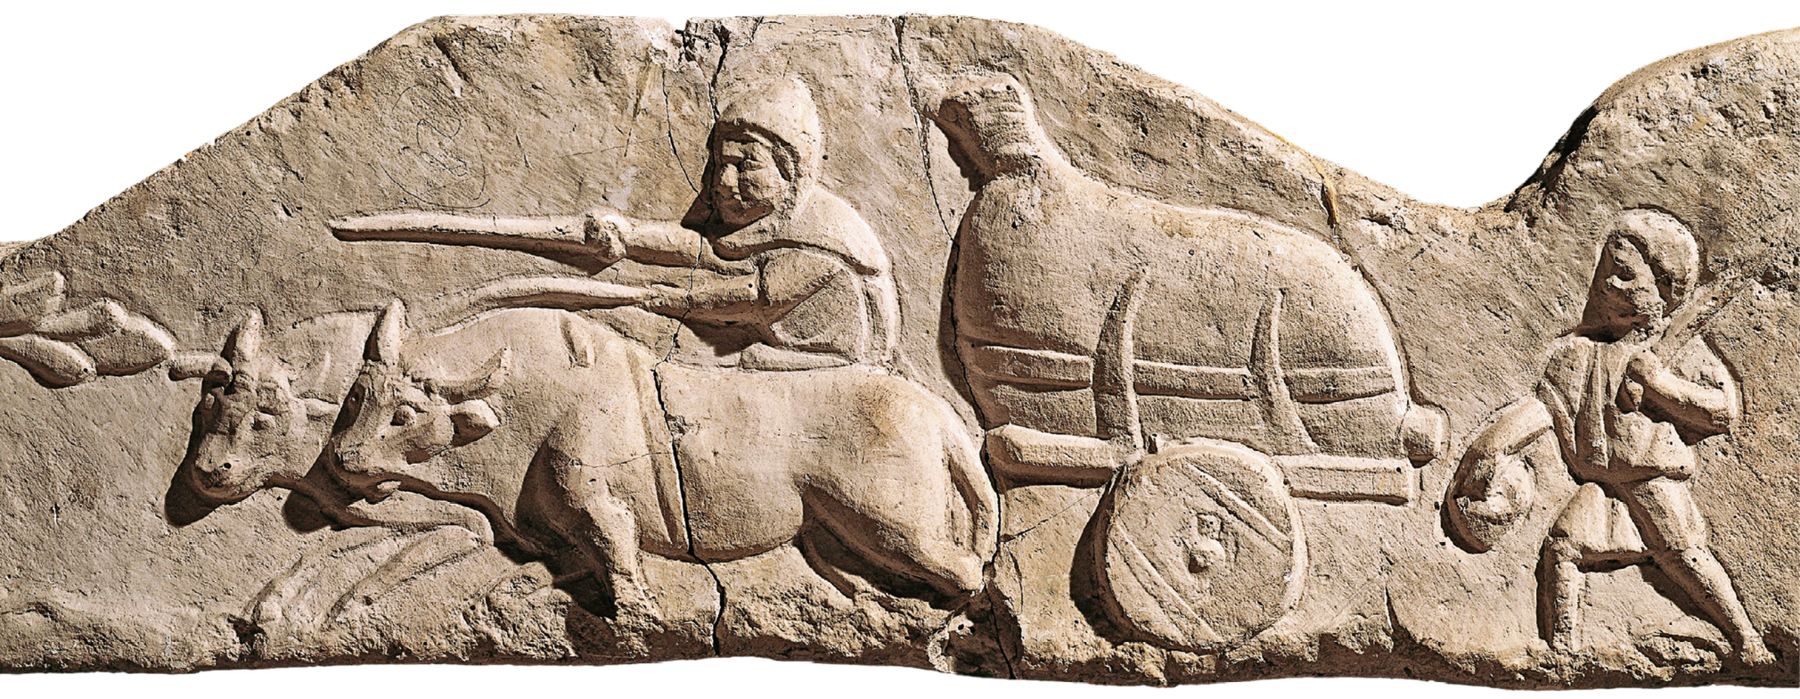 Escultura. Imagem esculpida em alto relevo em superfície rochosa. Representa um homem guiando bois que puxam uma carroça com uma grande sacola dentro. Atrás da carroça uma criança caminhando.